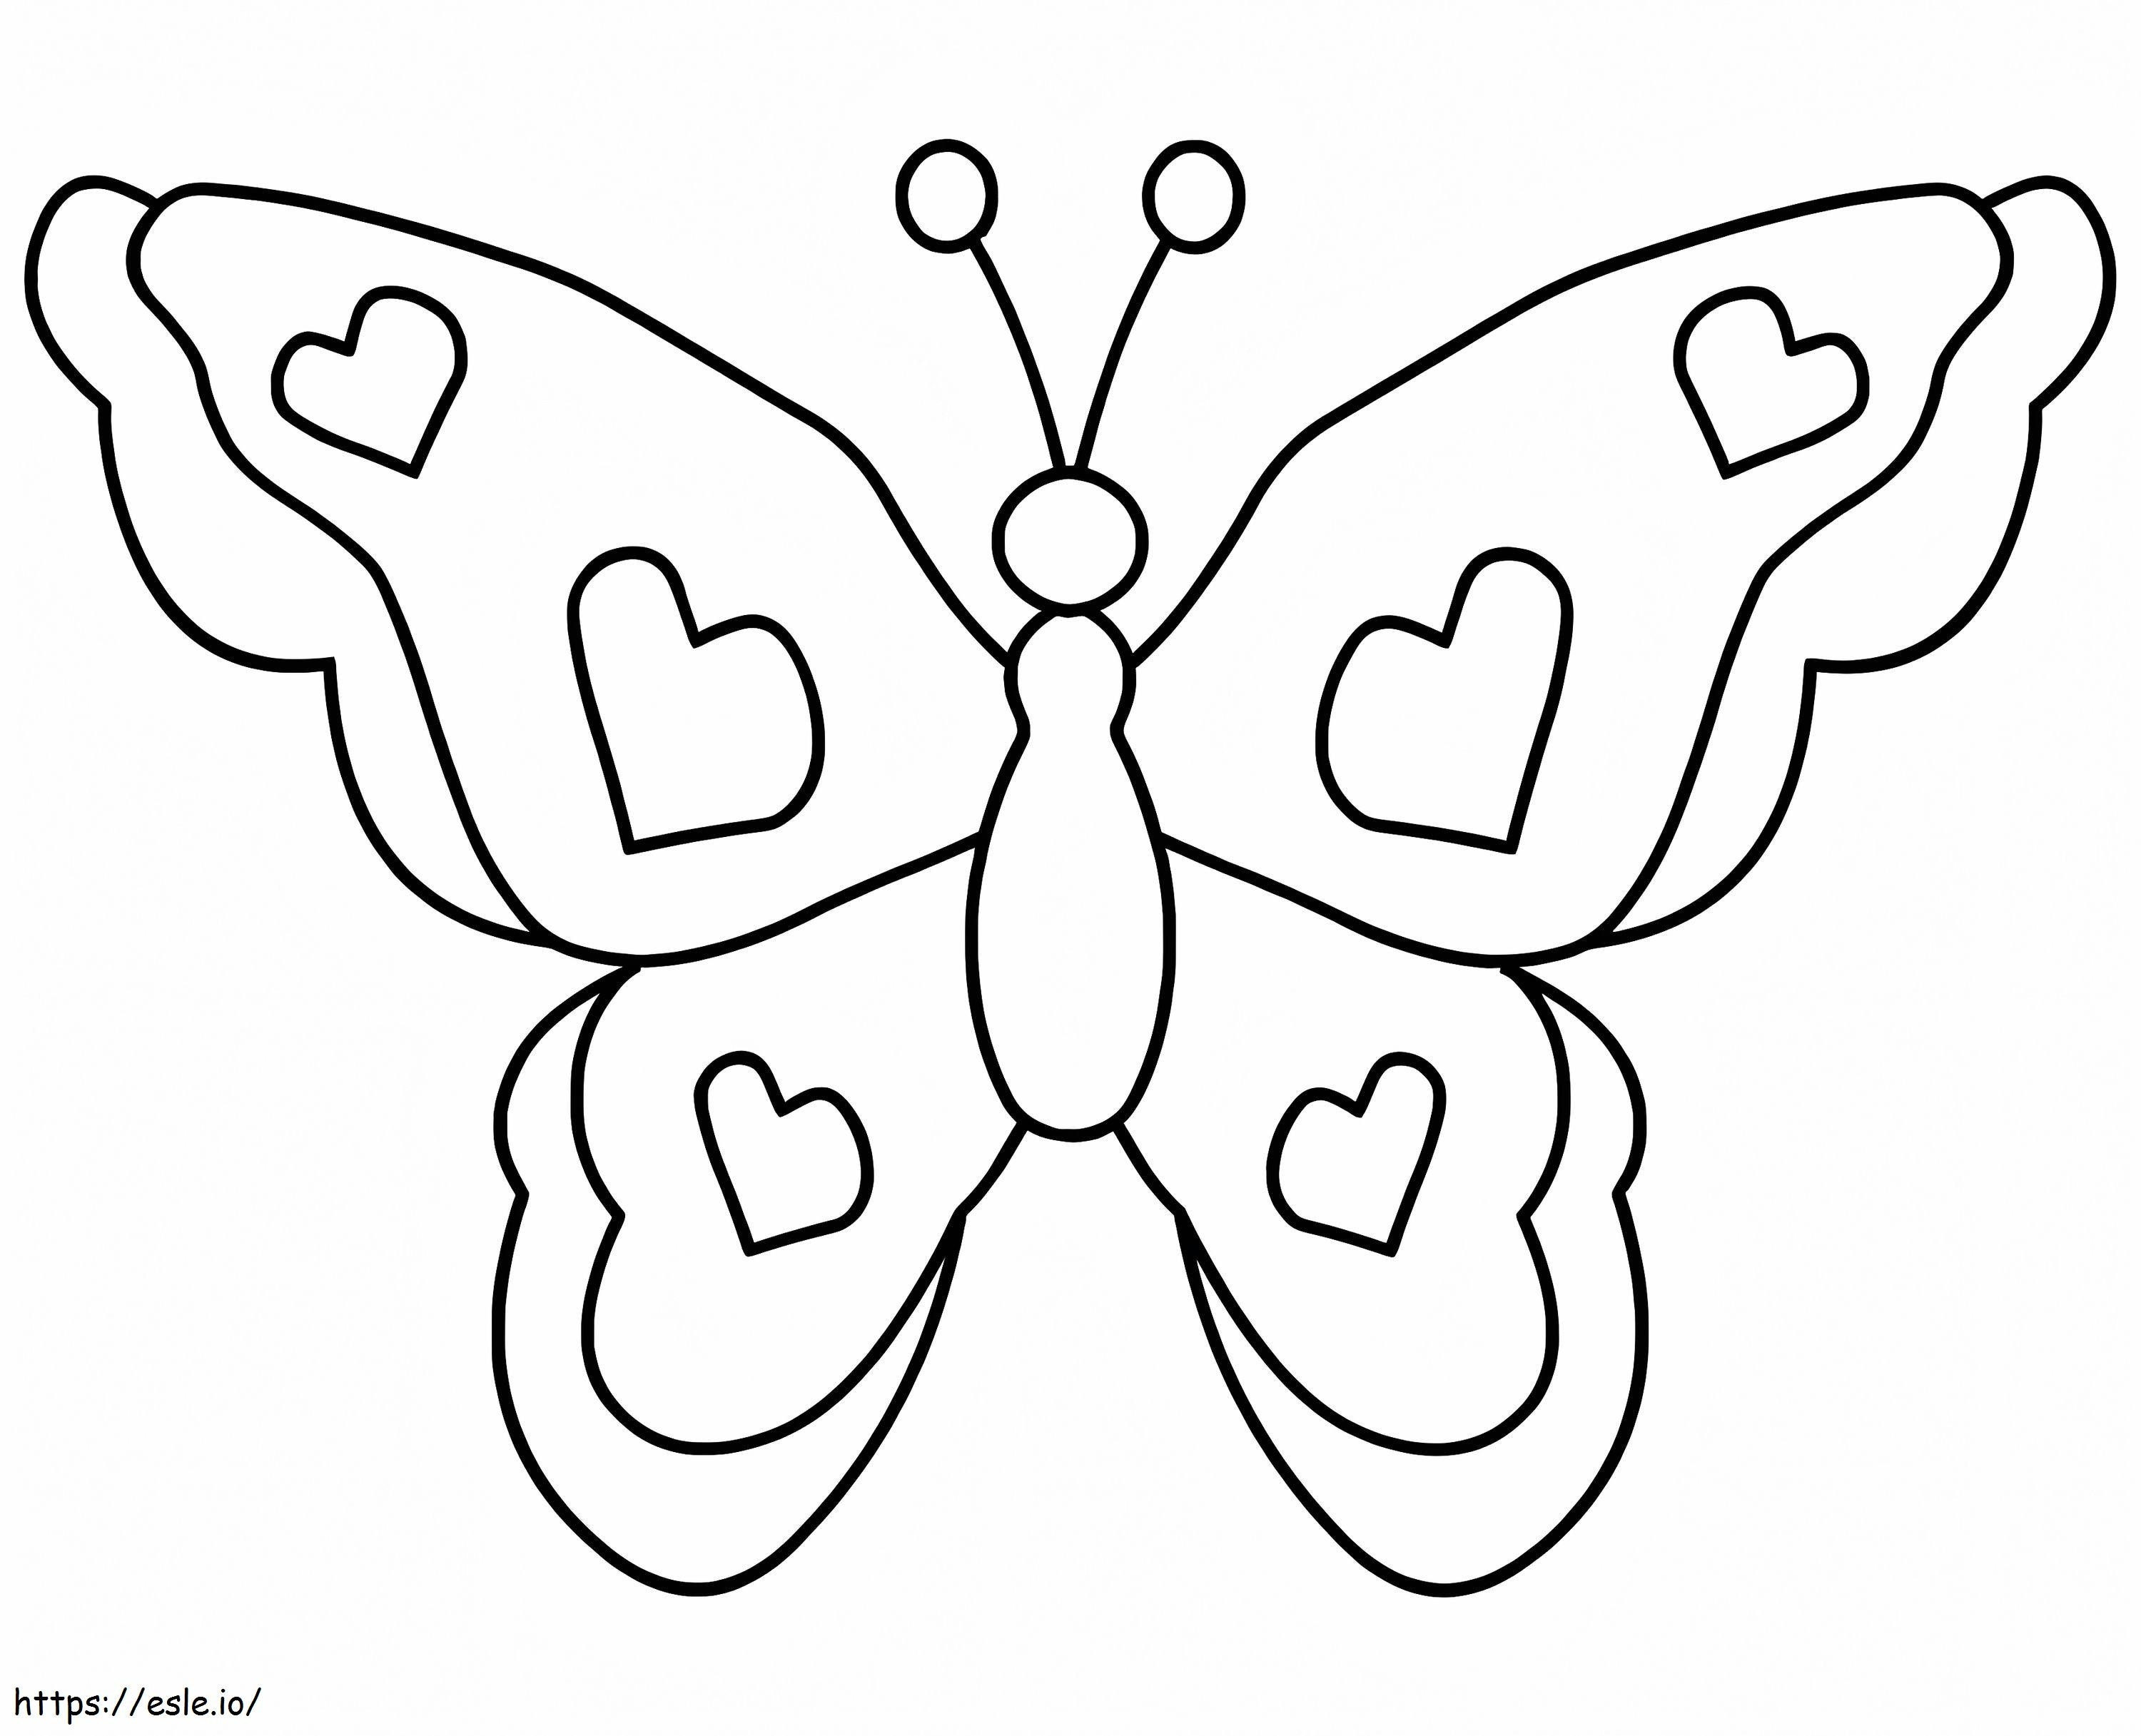 Coloriage Papillon simple à imprimer dessin